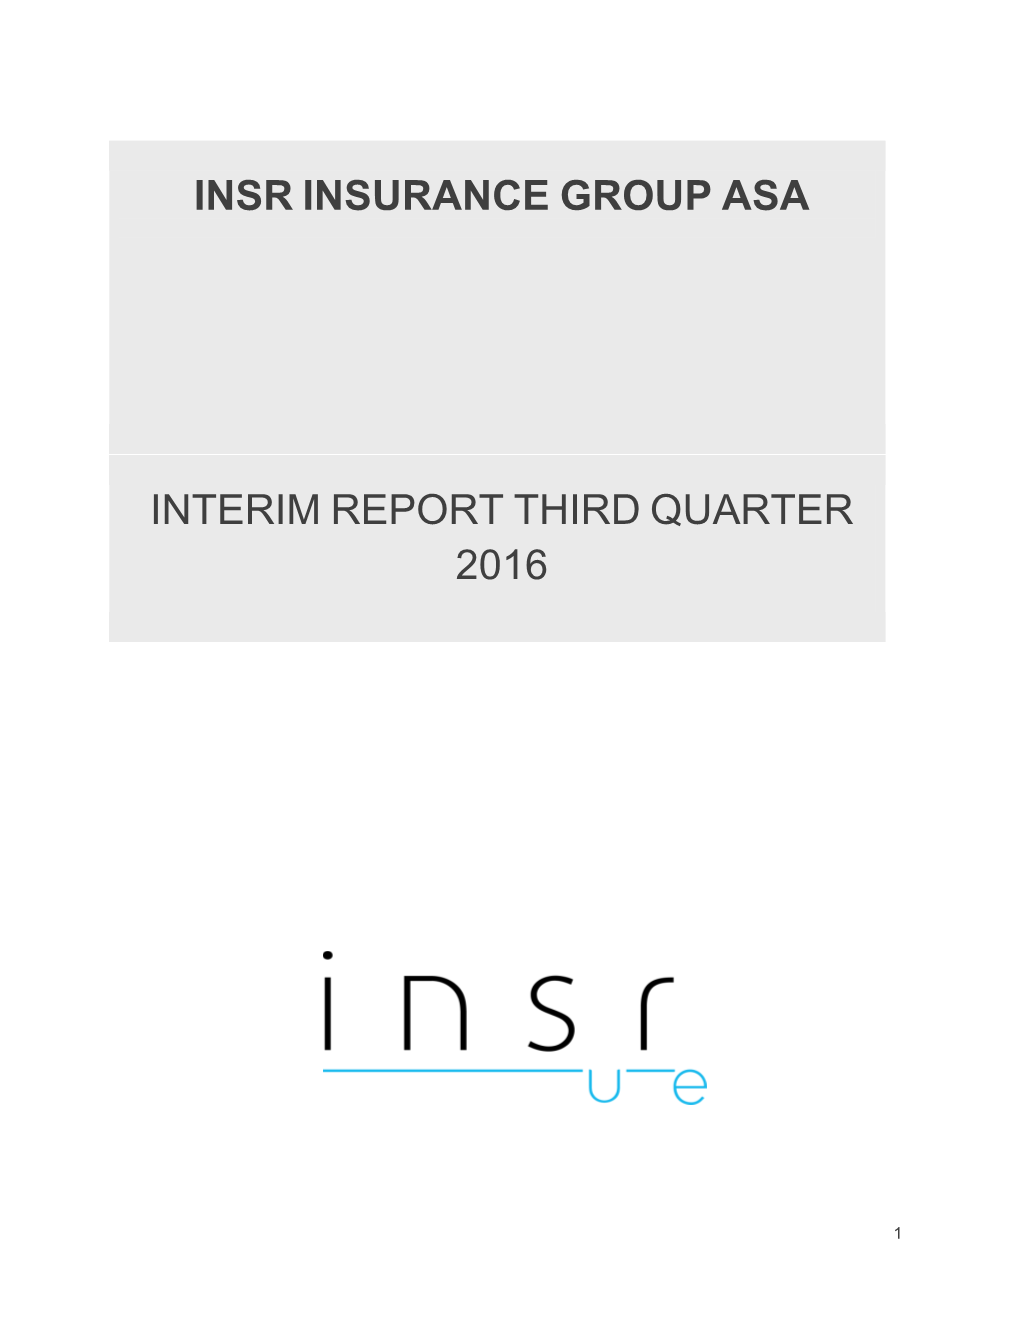 Interim Report Third Quarter